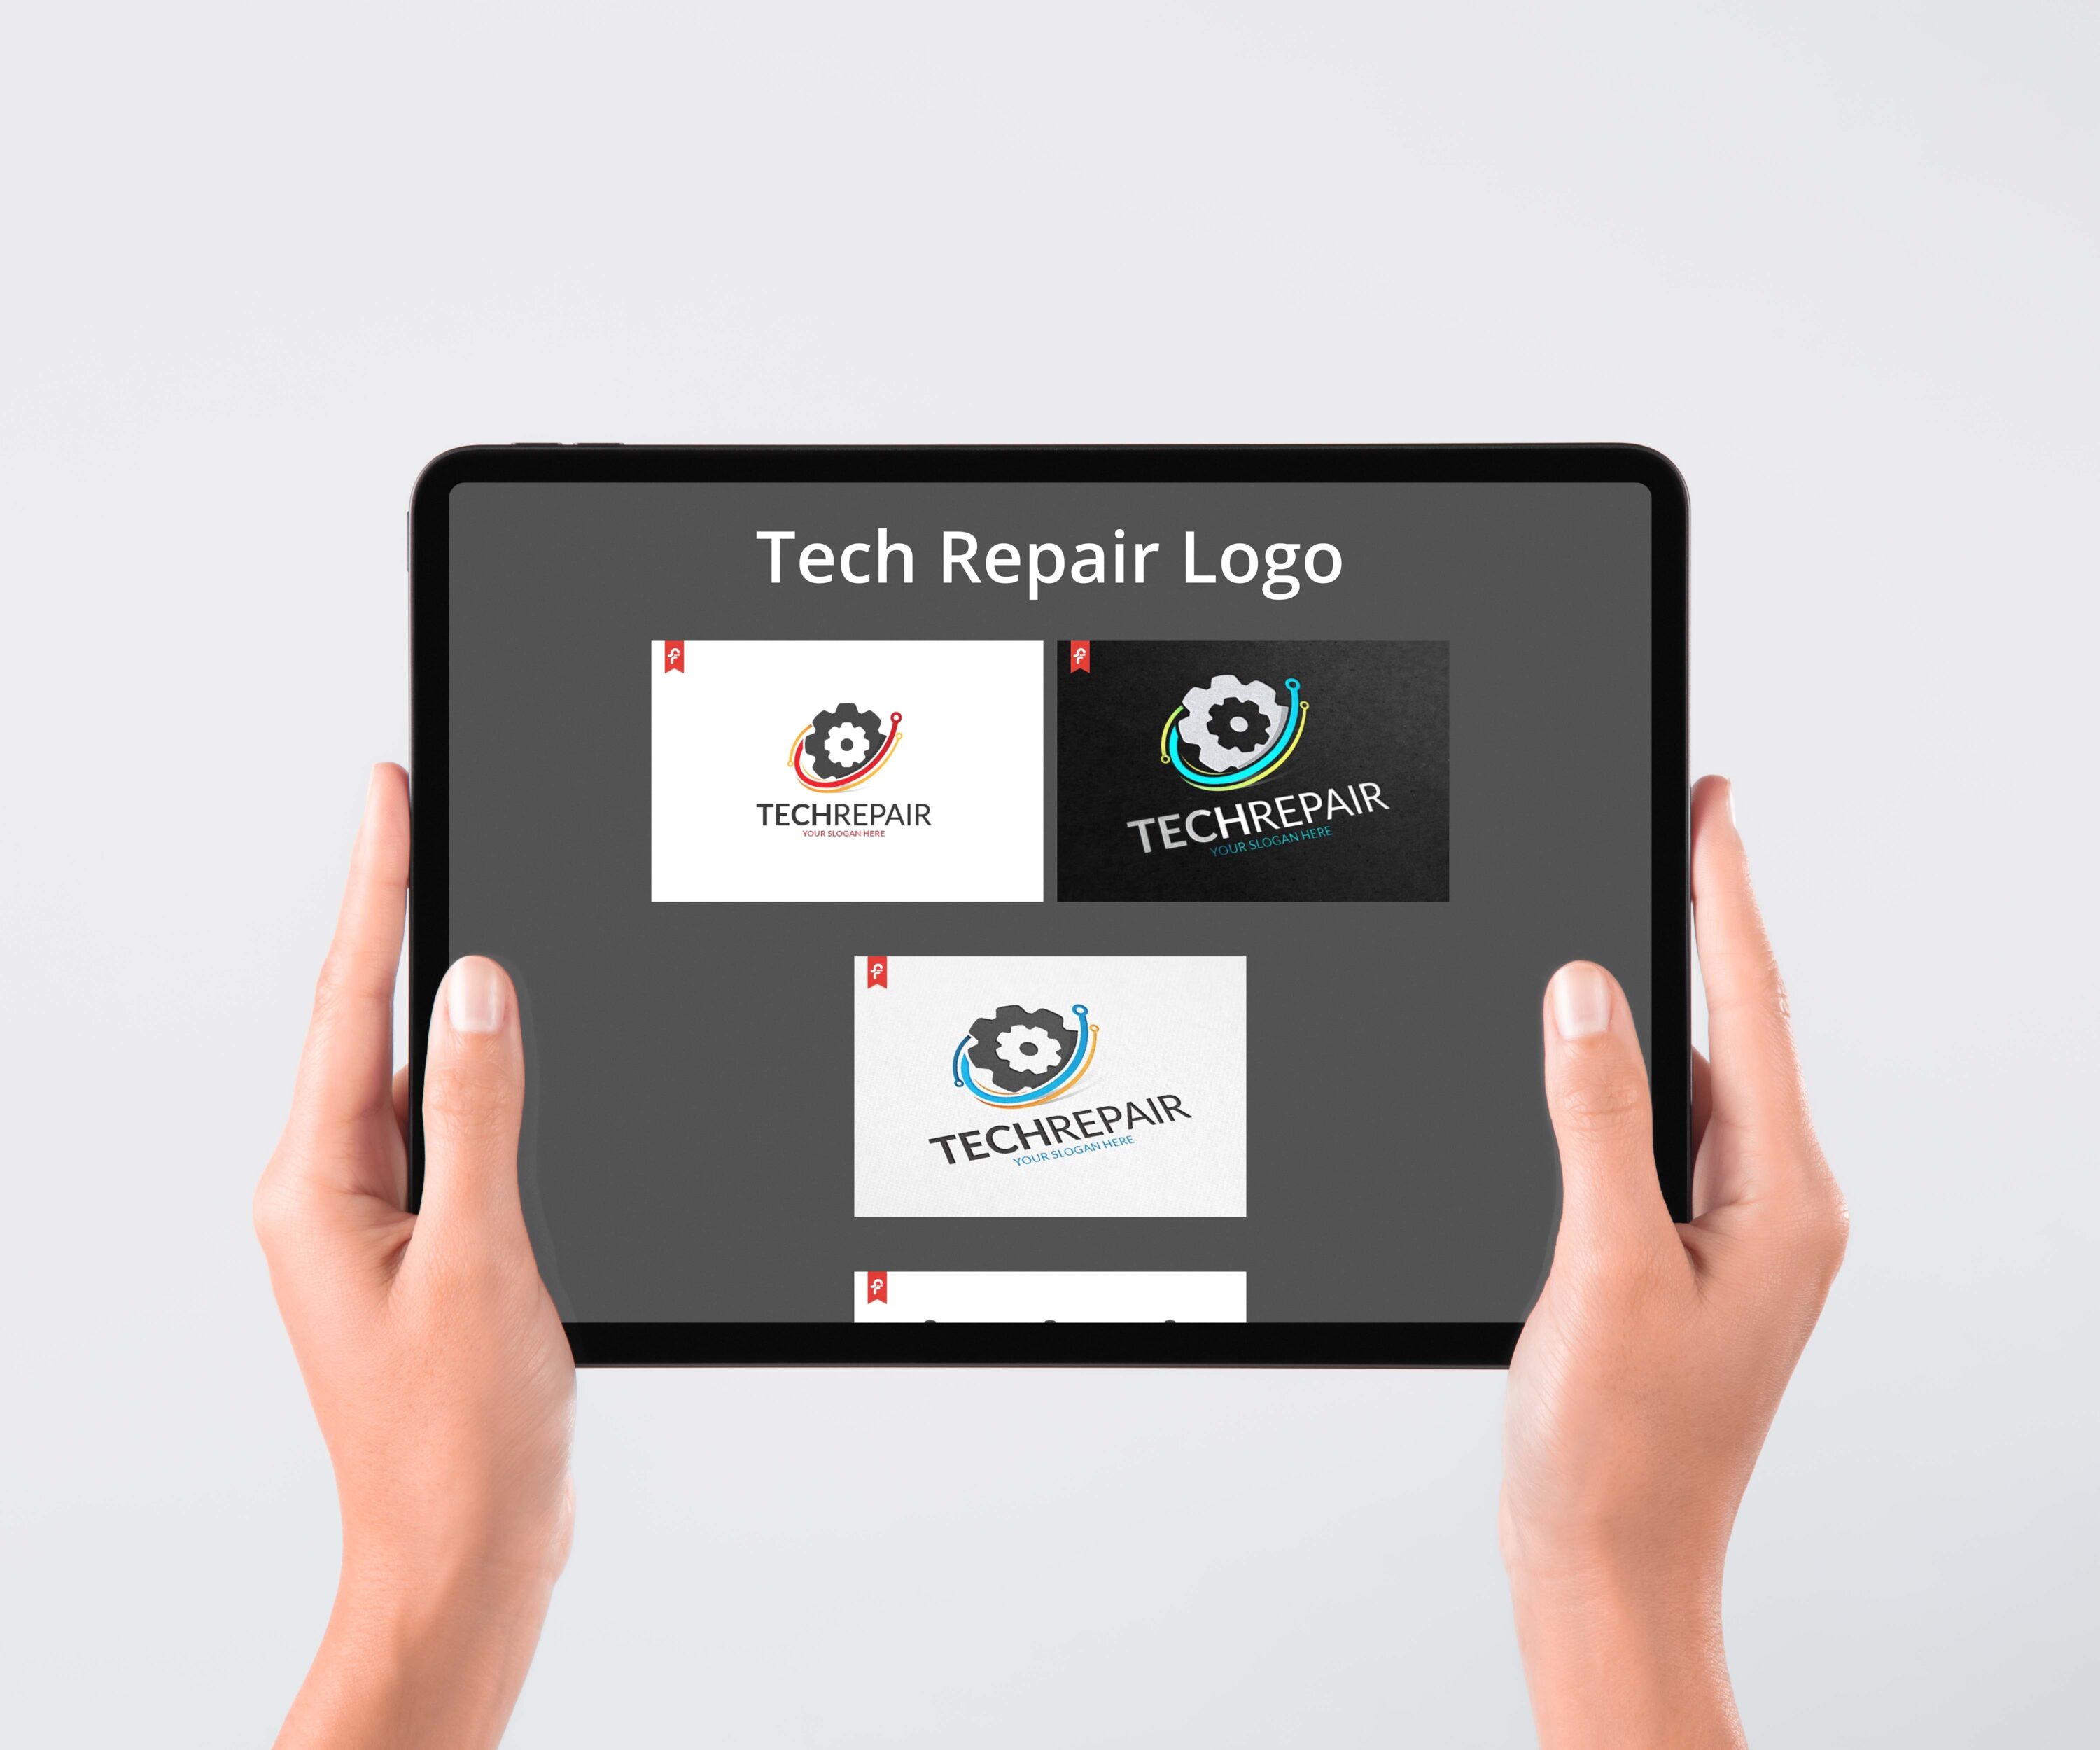 Tech Repair Logo tablet preview.